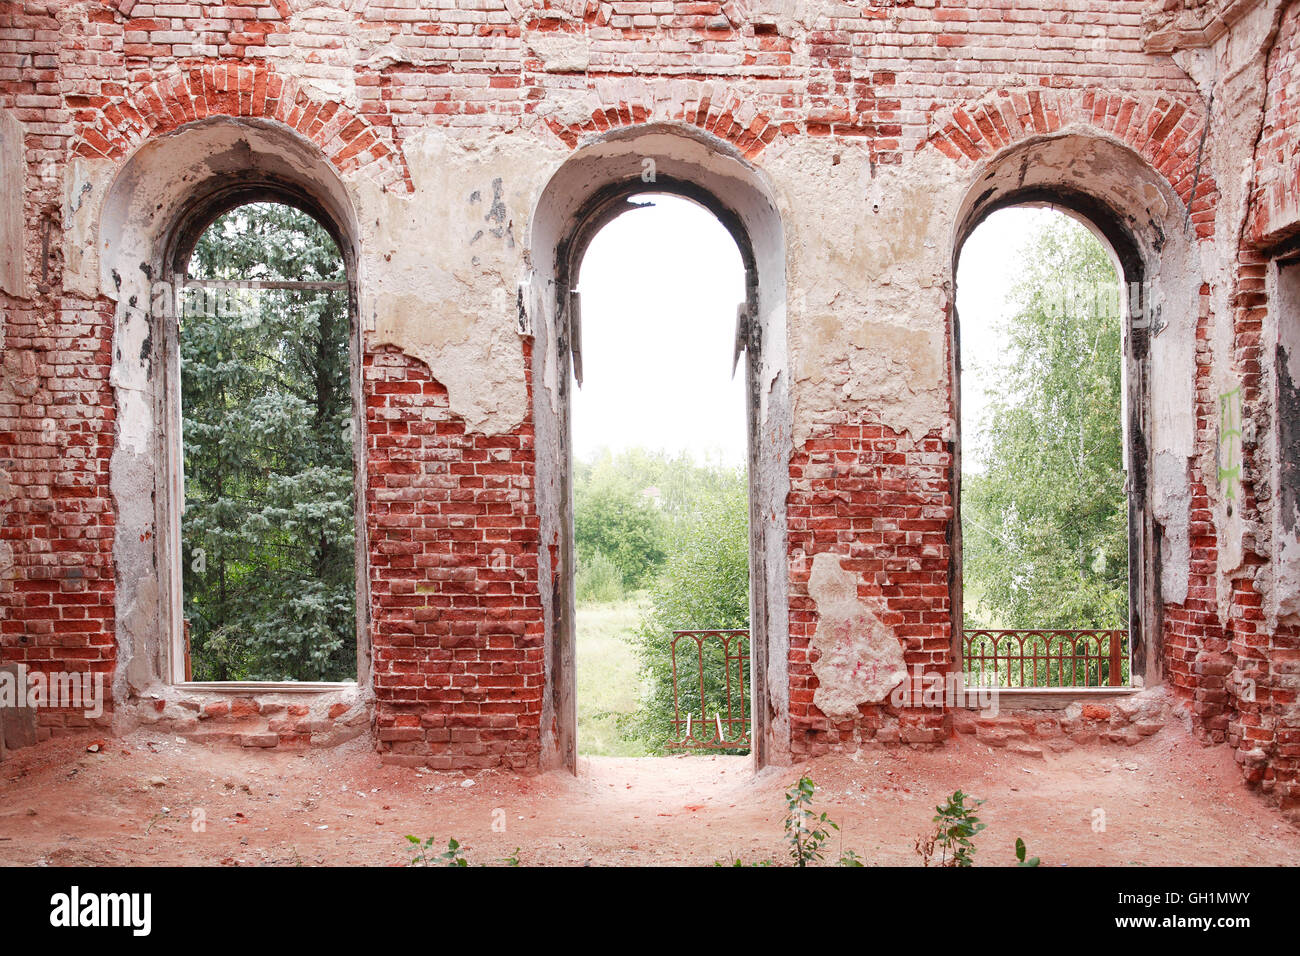 Vieille brique mur pays ruineuse avec porte et fenêtres Banque D'Images